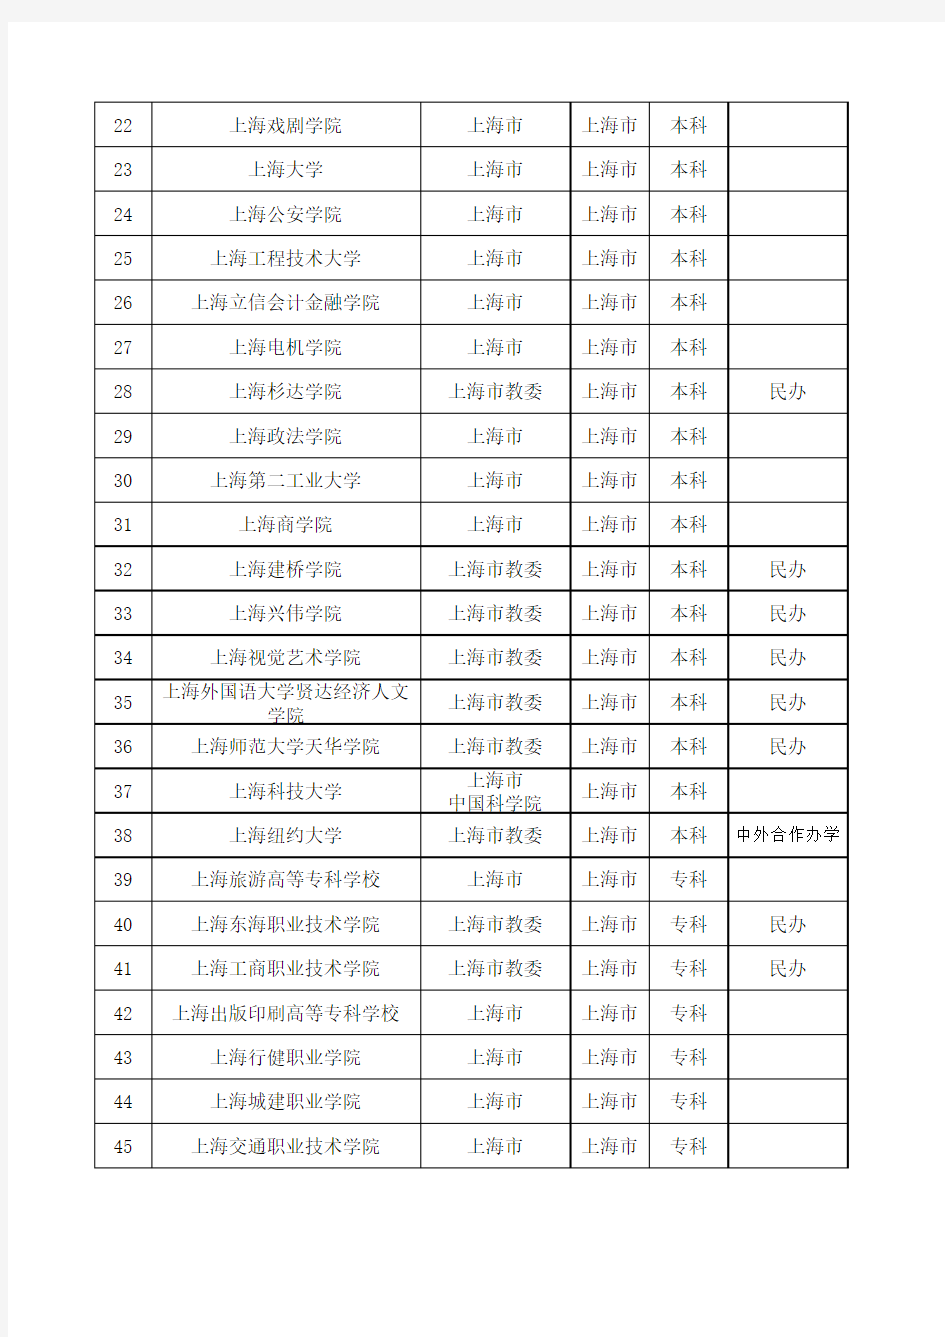 上海市高校名单(含成人高校)